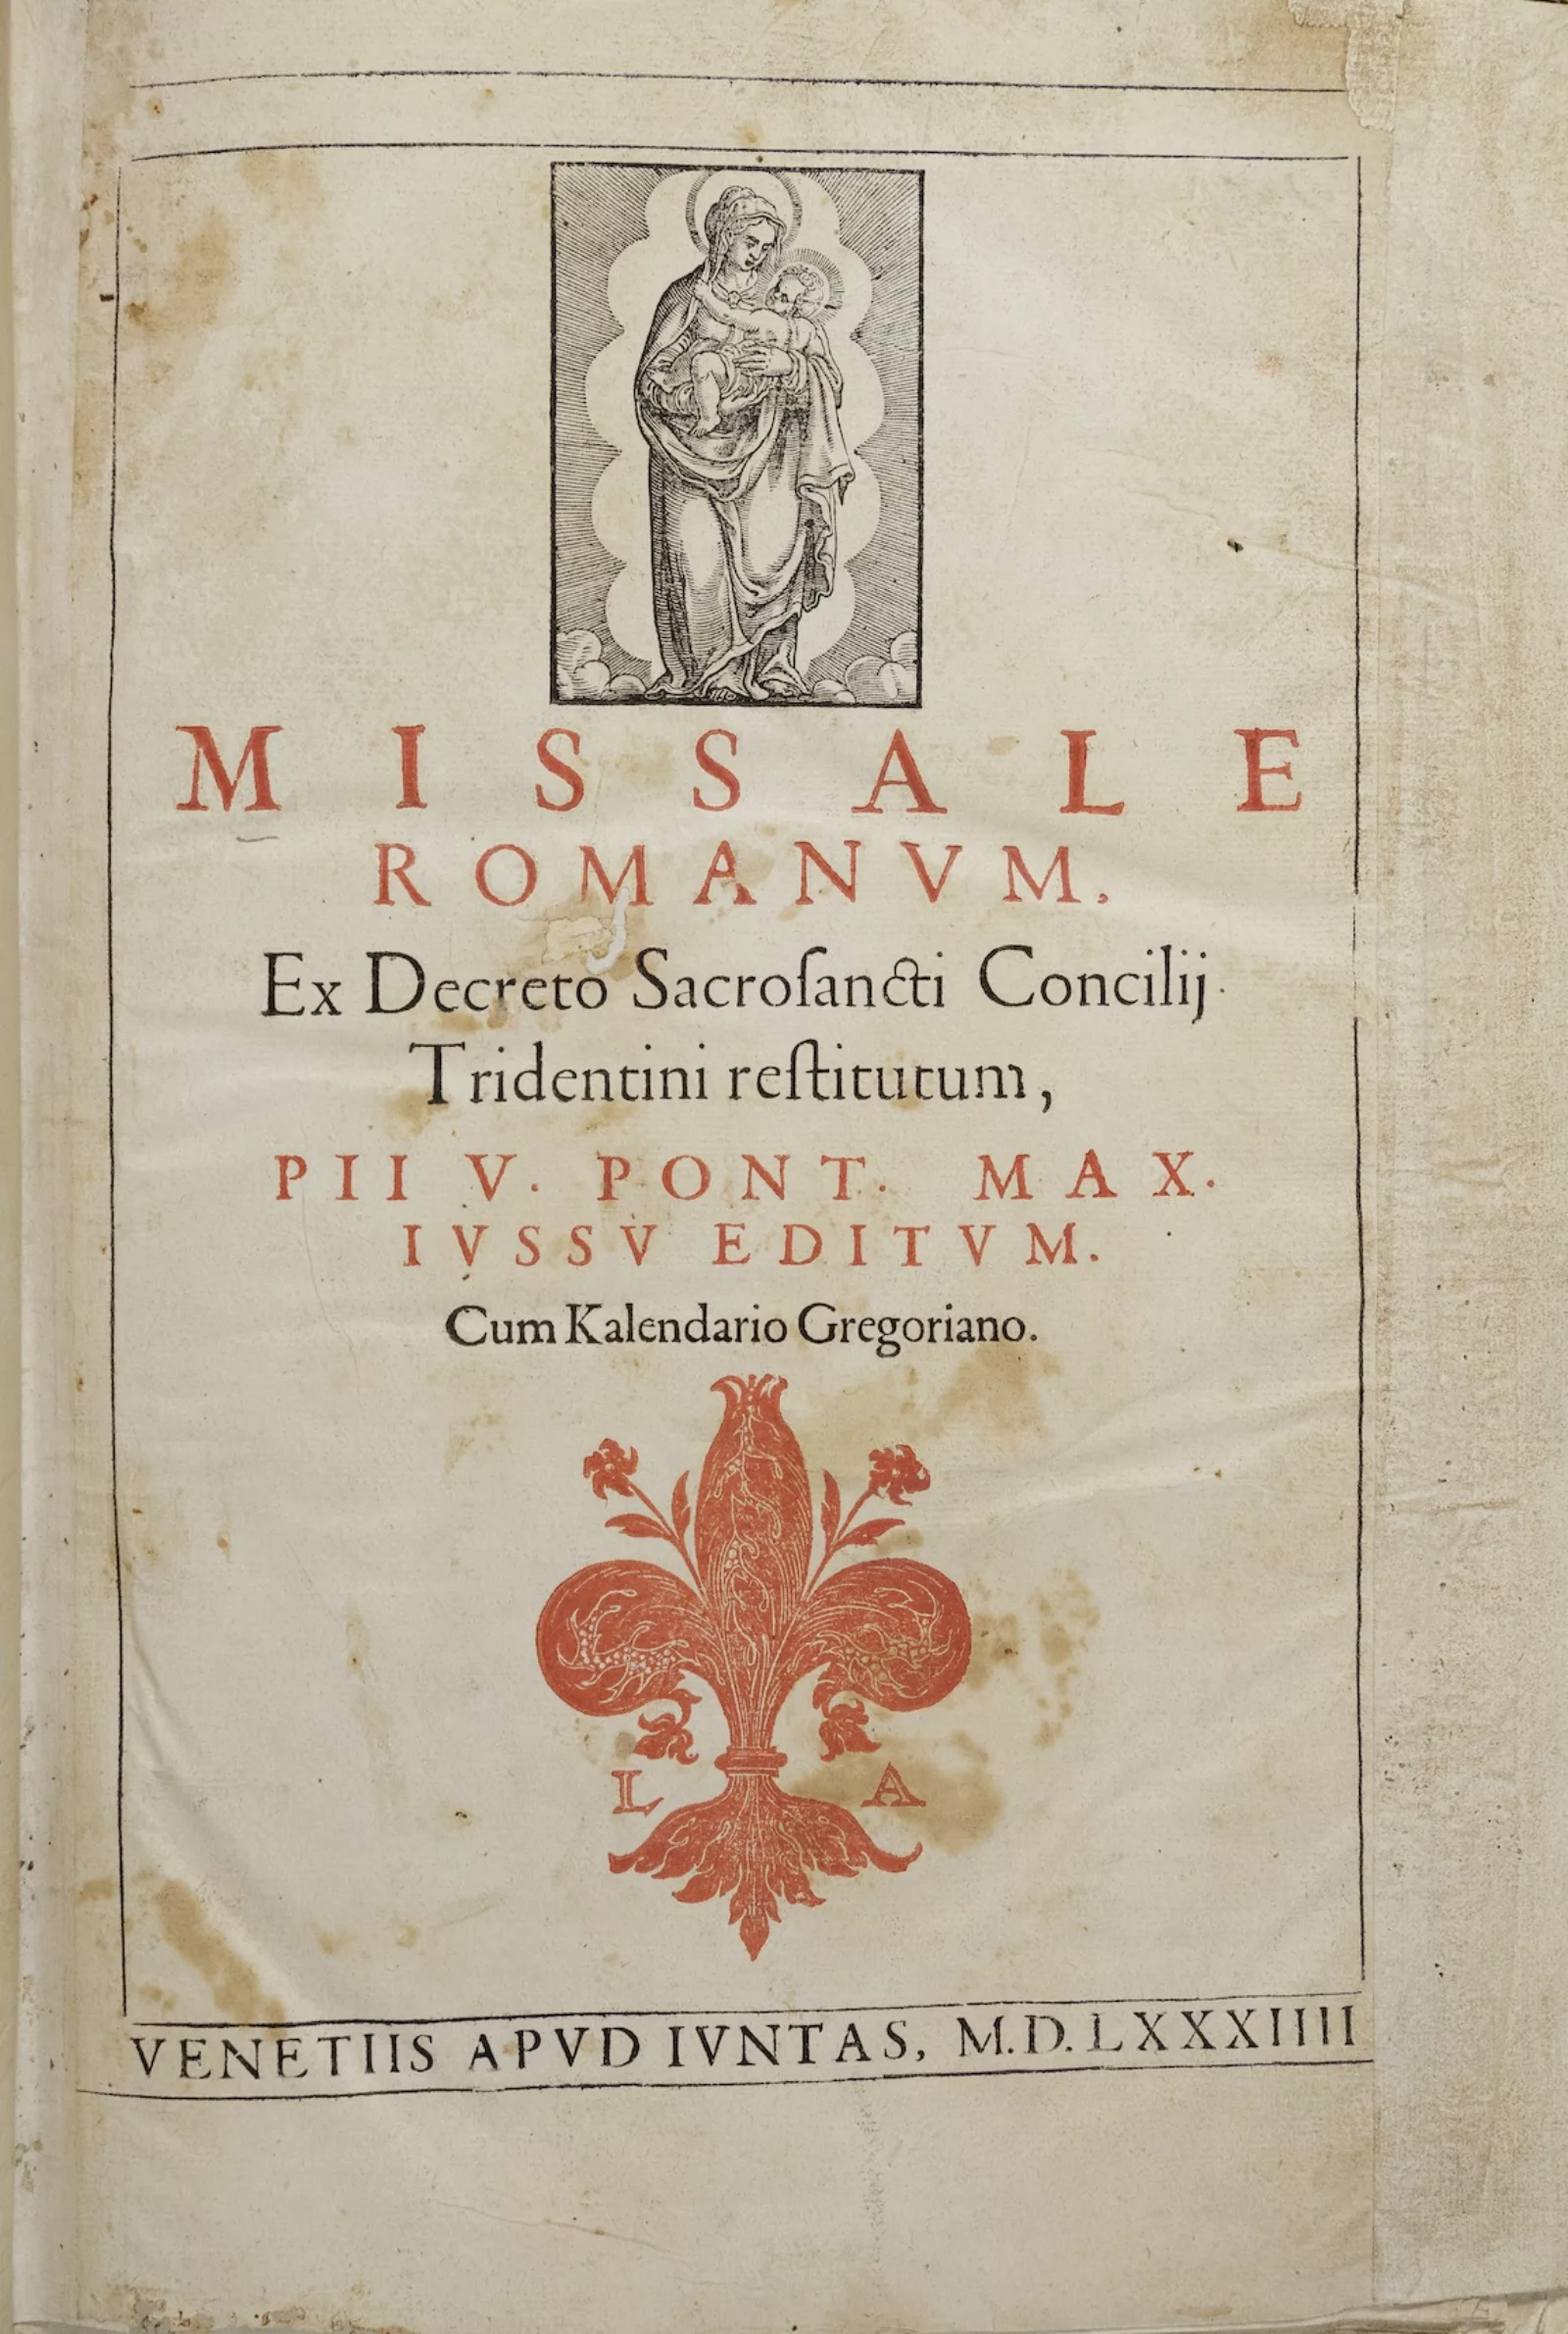 Frontispiece. Missale Romanum. Venice, 1584.